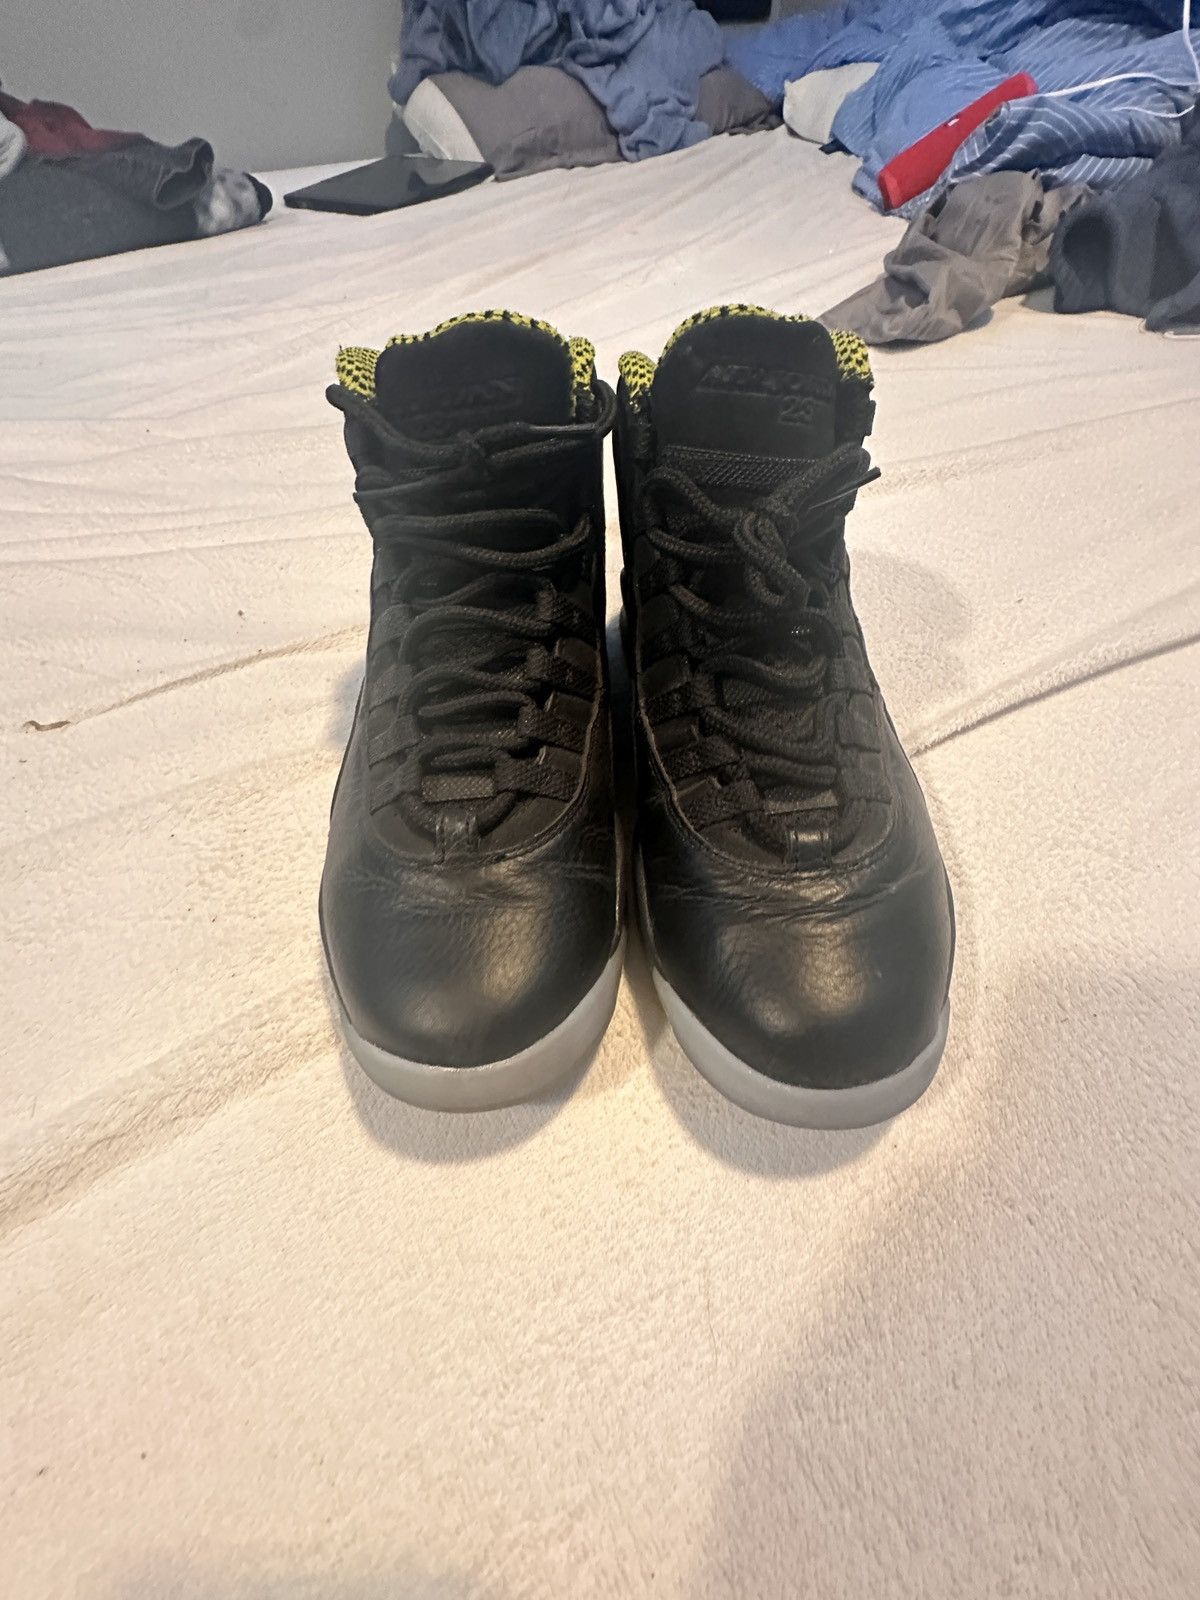 Nike Jordan retro 10 venoms Size US 8.5 / EU 41-42 - 5 Thumbnail